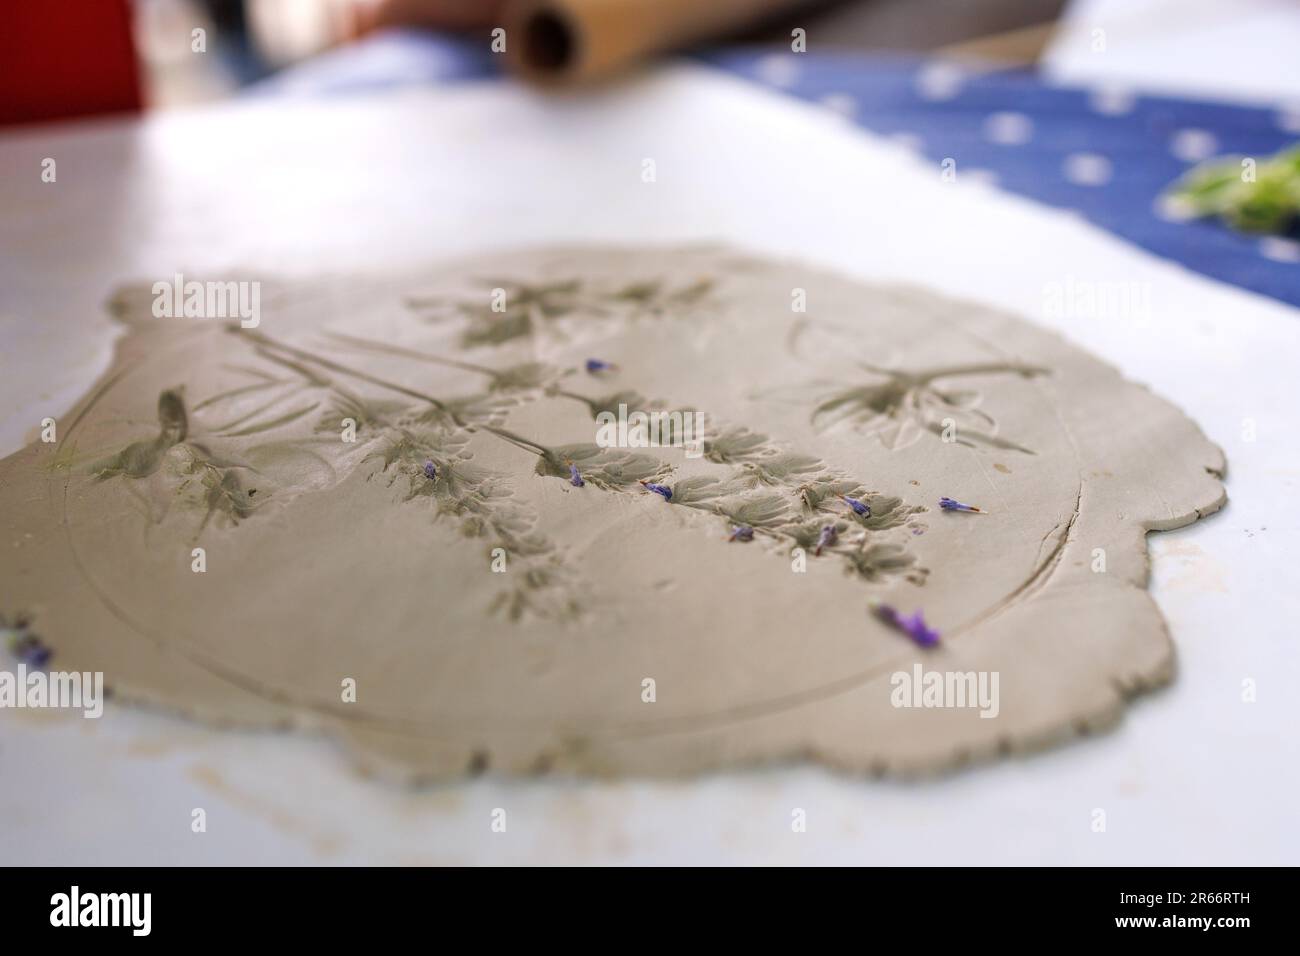 Creazione di ceramica stencil con fiori e foglie di lavanda e altre piante premendo sul tavolo Foto Stock